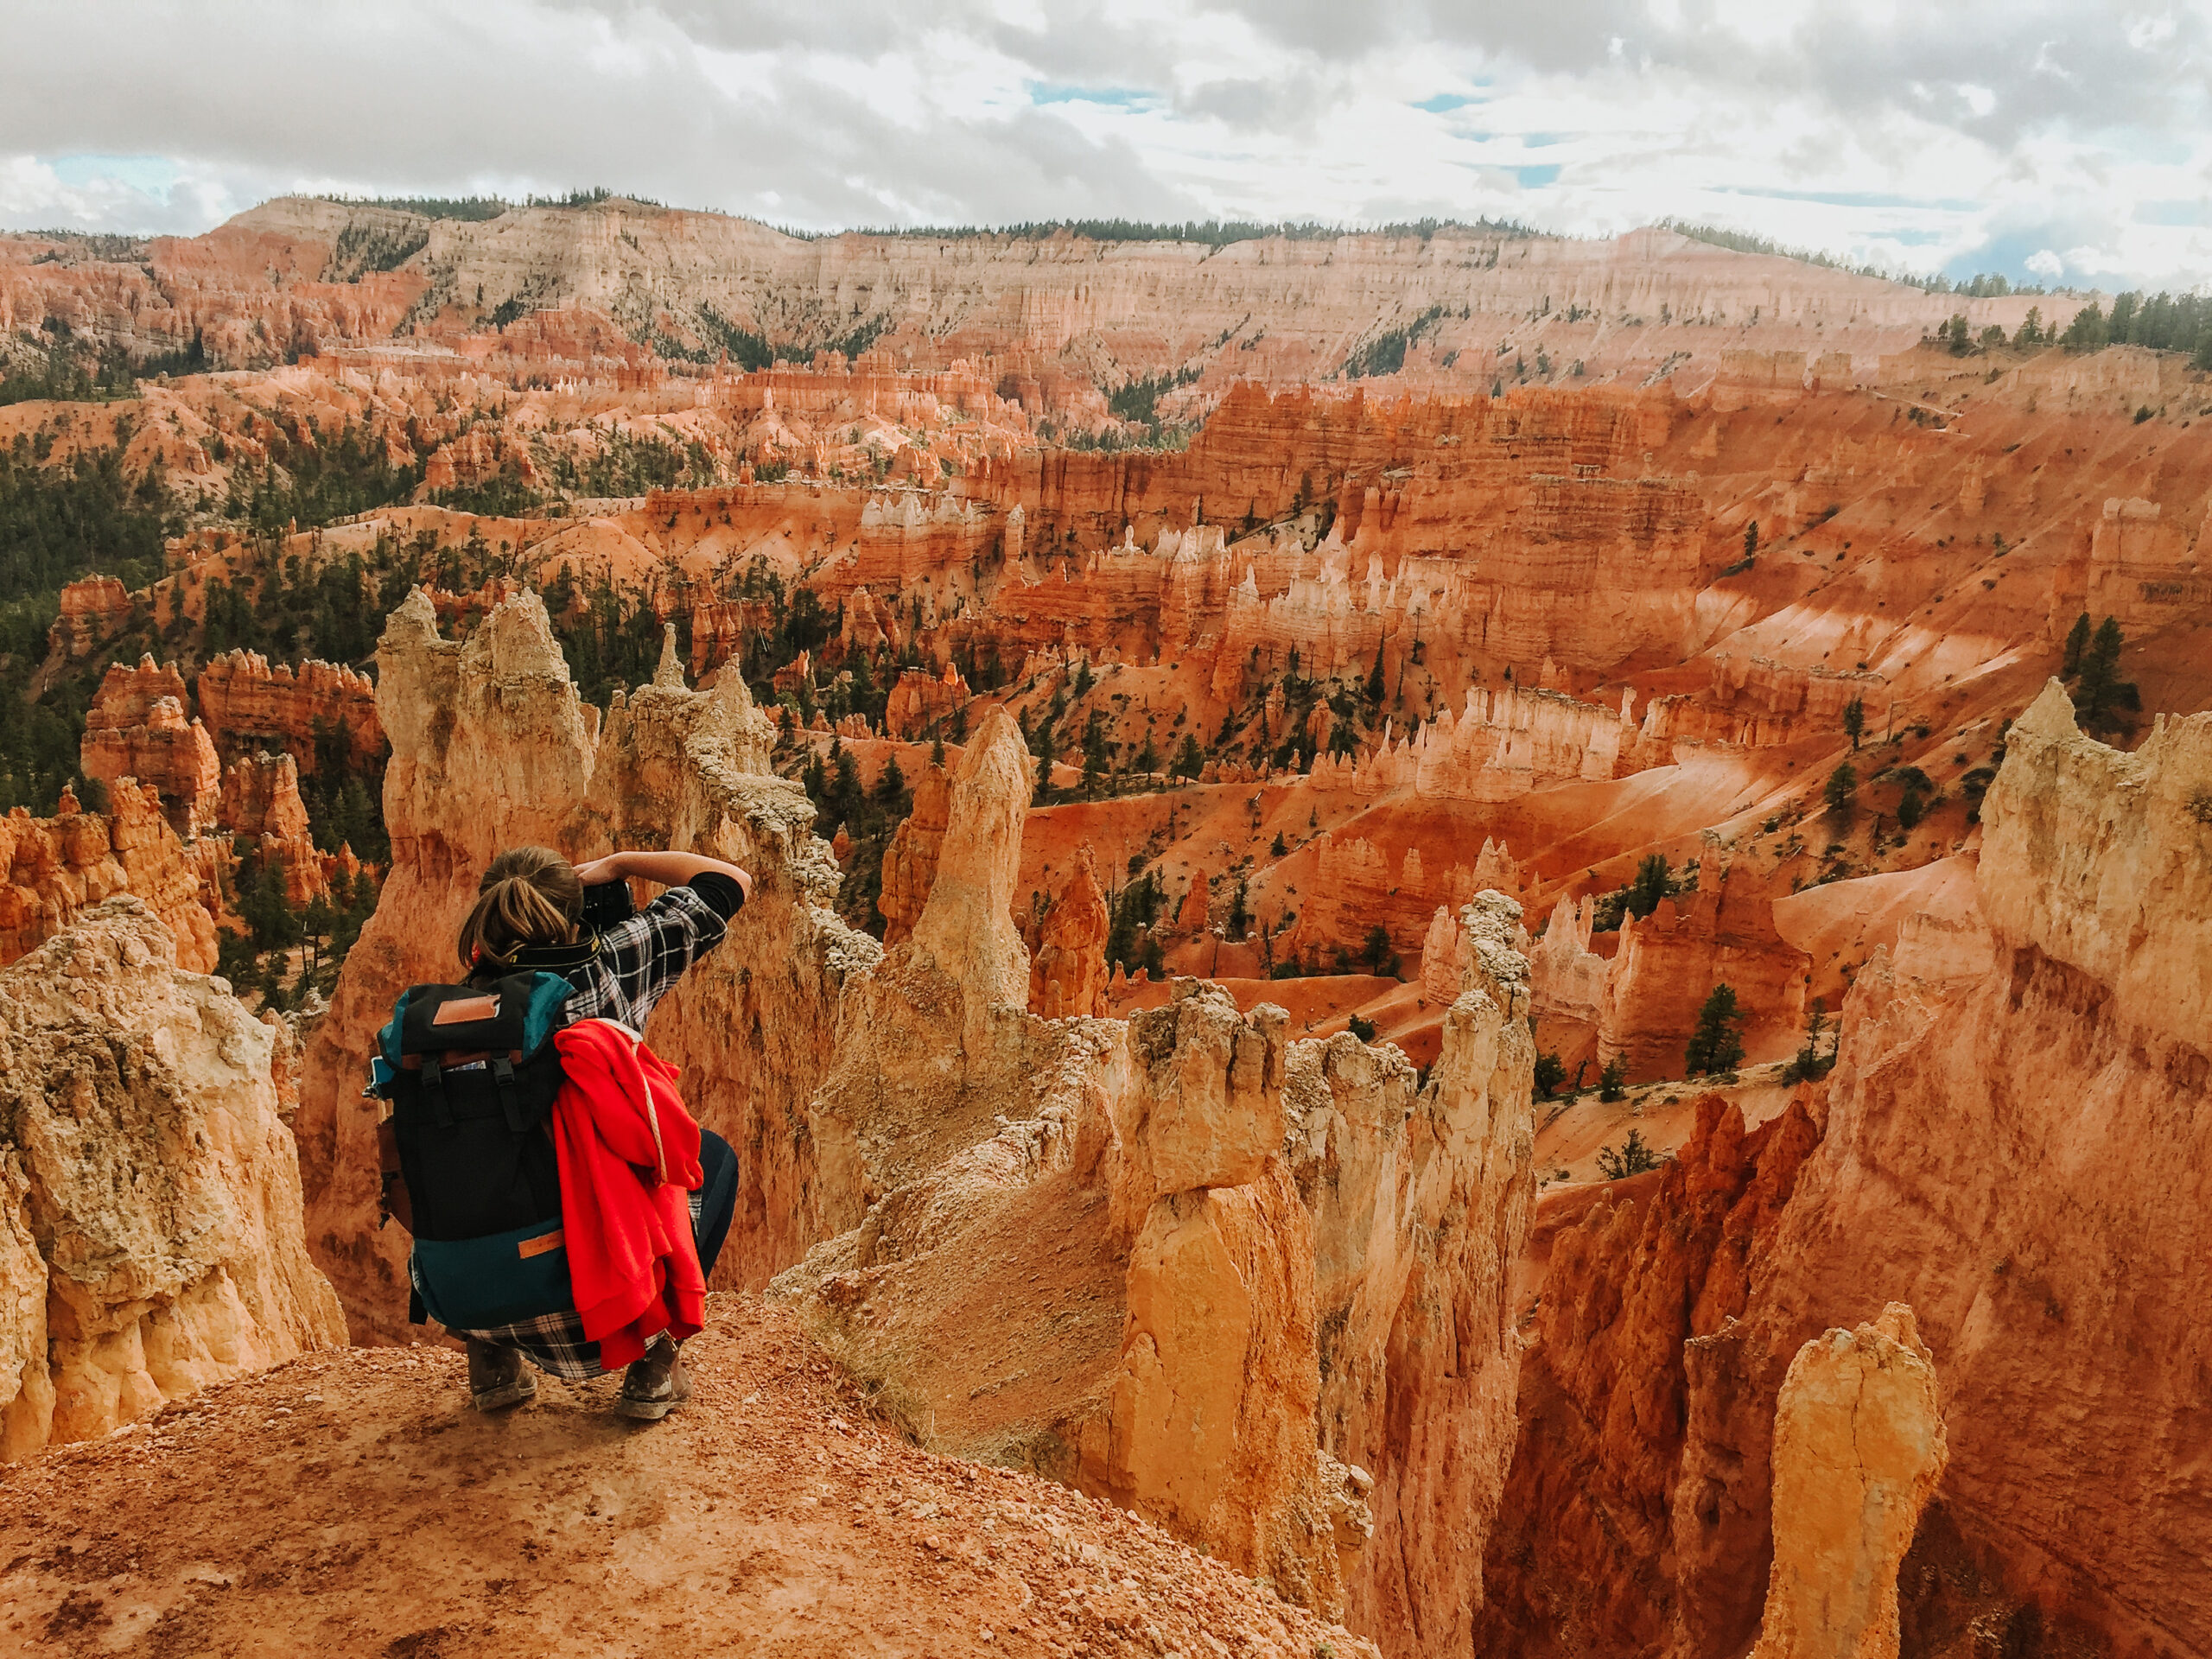 Krajobraz Wielkiego Kanionu Kolorado. Rude skały, niebo zachmurzone. Na pierwszym planie po lewej młoda dziewczyna z plecakiem, tyłem do widza, kuca i robi zdjęcie.